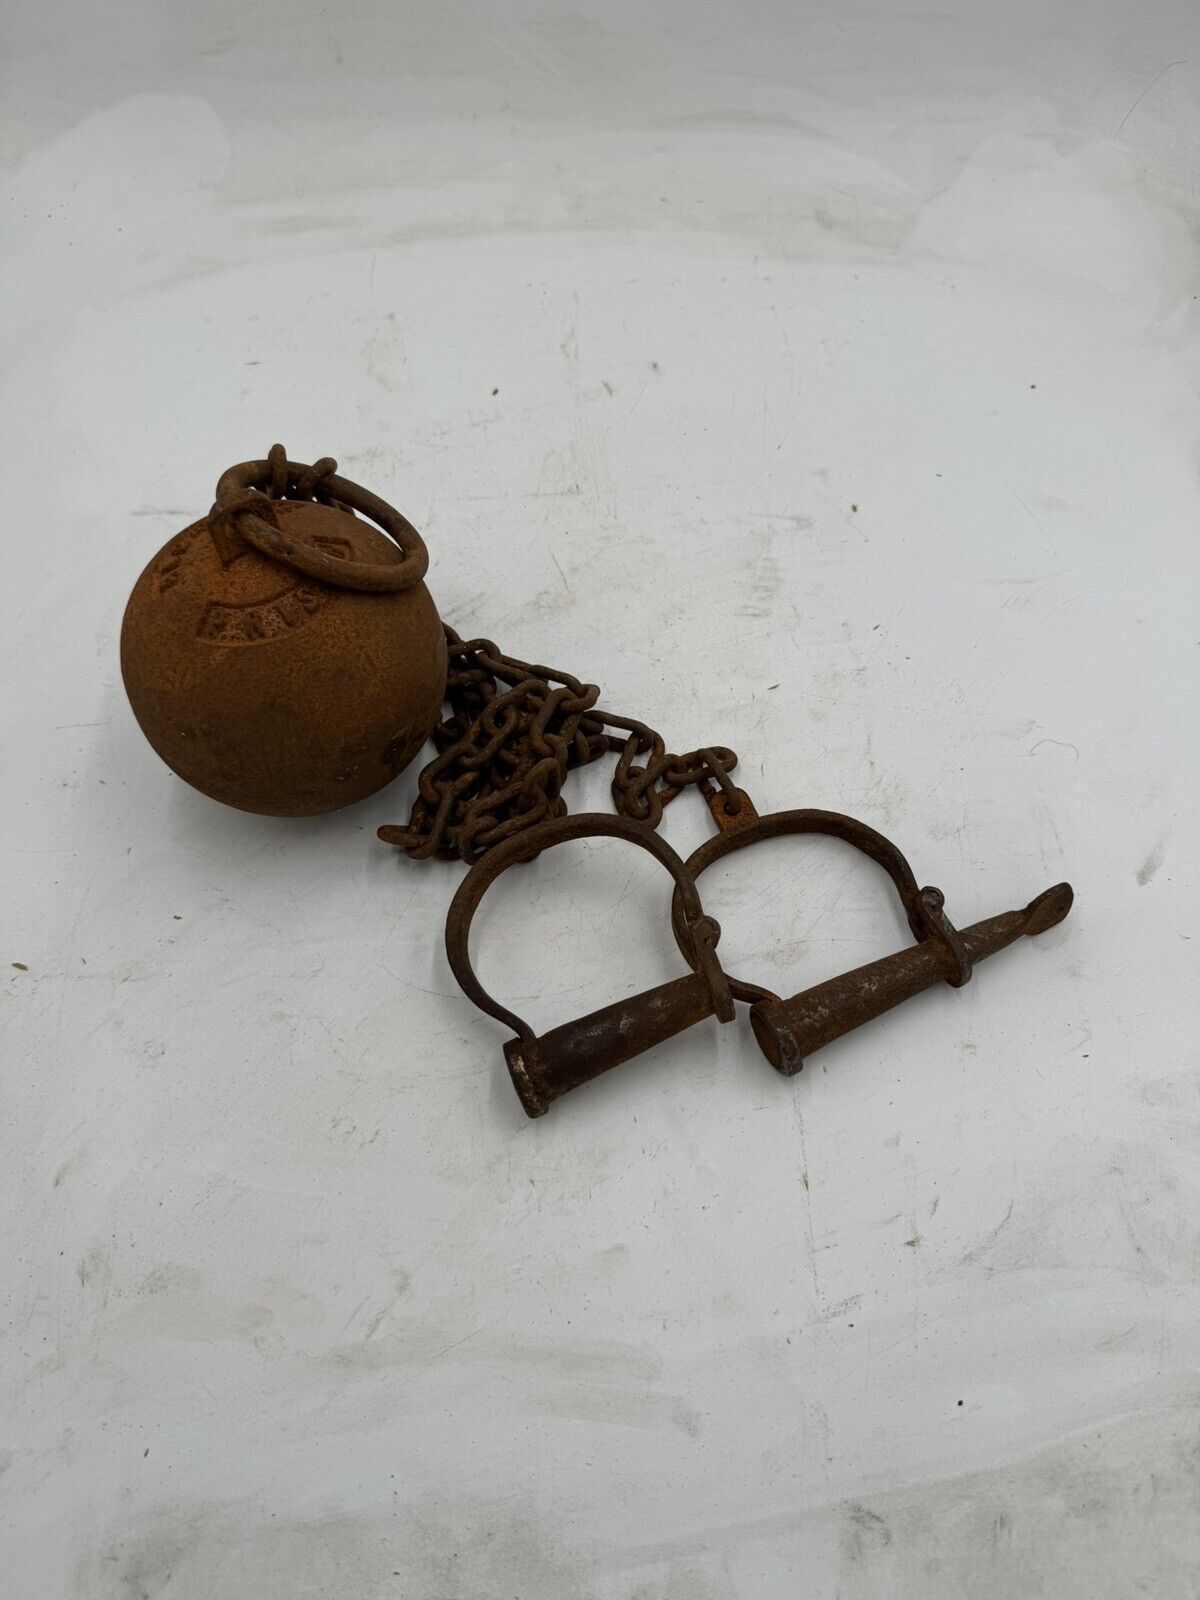 Alcatraz Ball & Chain Leg Irons Cuffs + Key San Francisco Prison Artifact